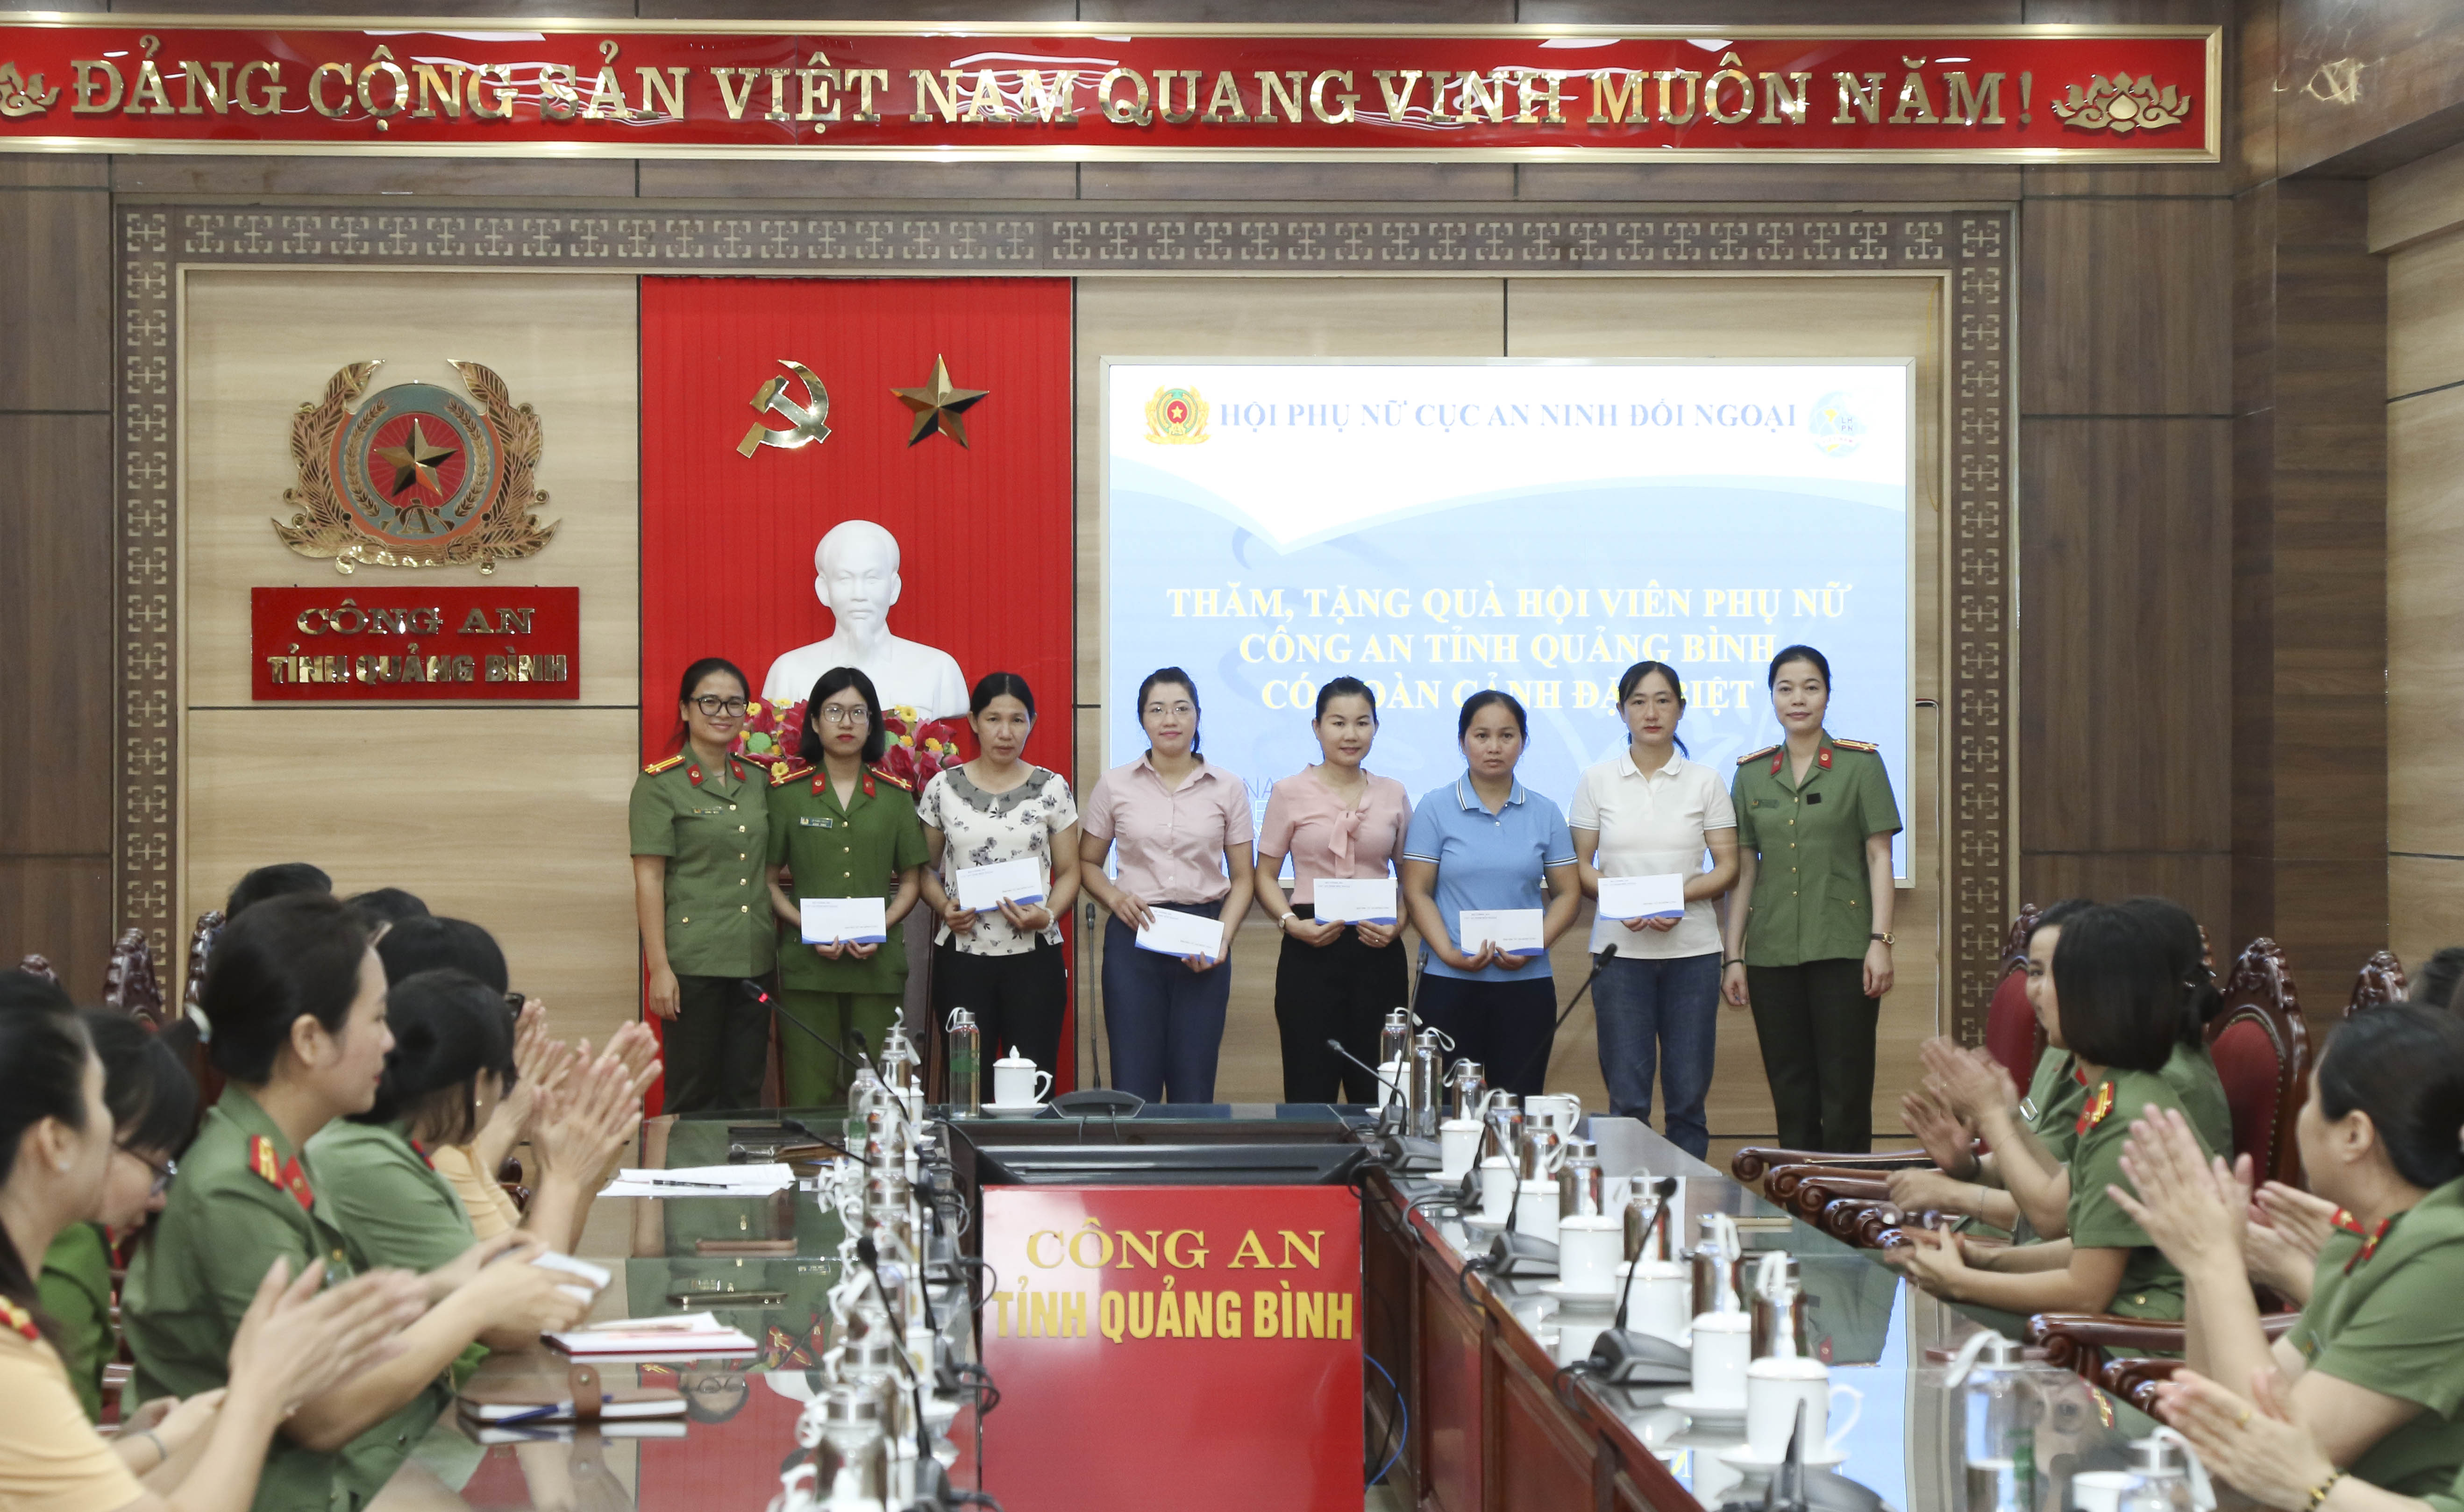  Hội phụ nữ Cục An ninh đối ngoại, Bộ Công an tặng quà gia đình hội viên Hội phụ nữ Công an tỉnh Quảng Bình